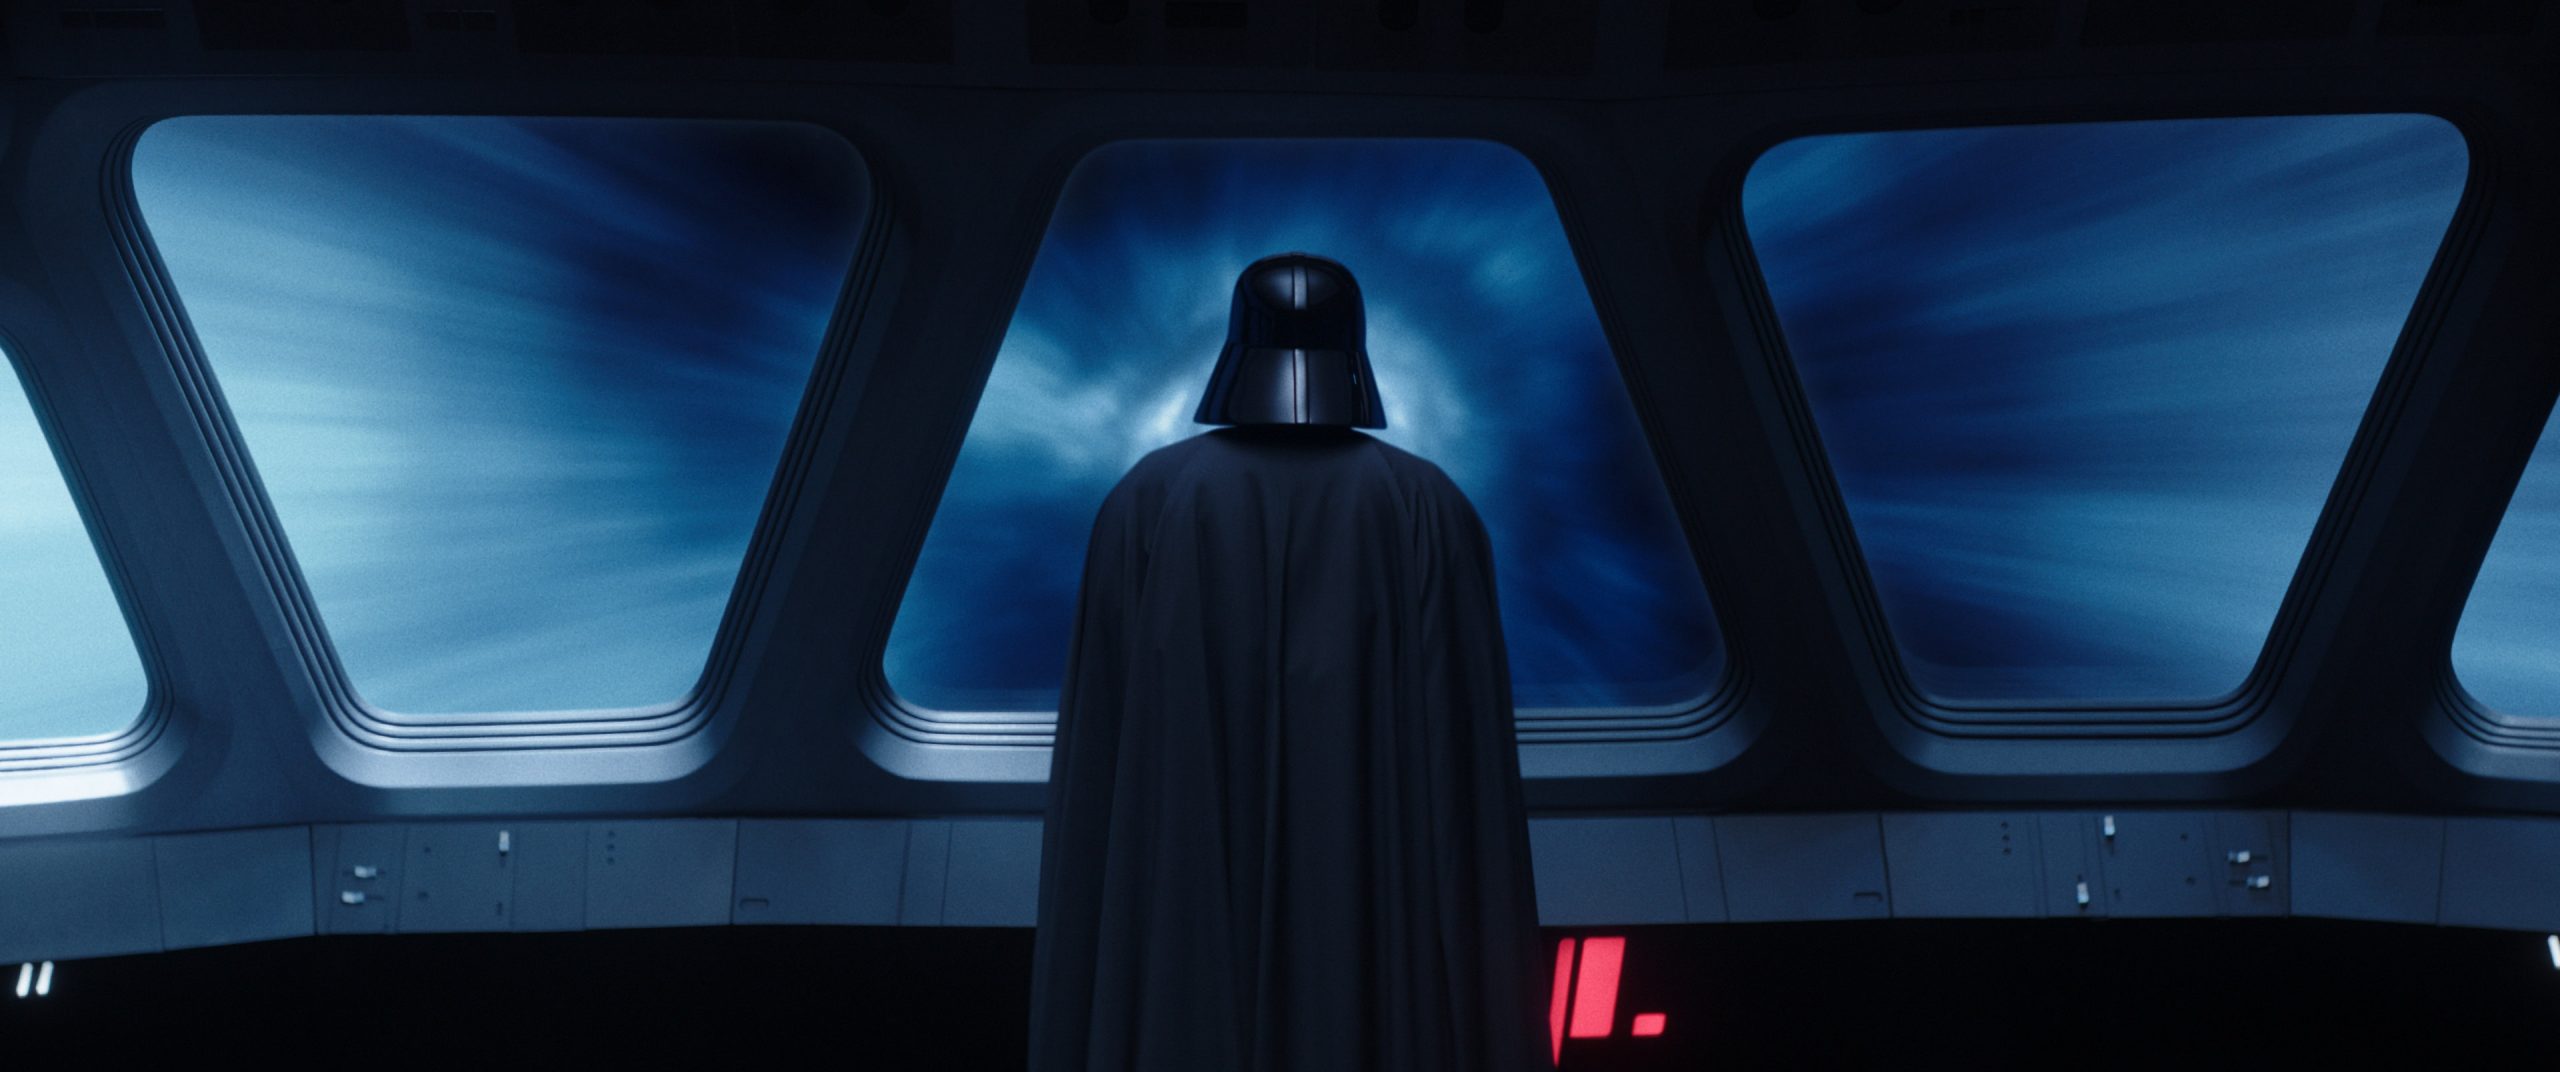 Darth Vader (Hayden Christensen) em OBI-WAN KENOBI da Lucasfilm, exclusivamente no Disney+. © 2022 Lucasfilm Ltd. Todos os direitos reservados